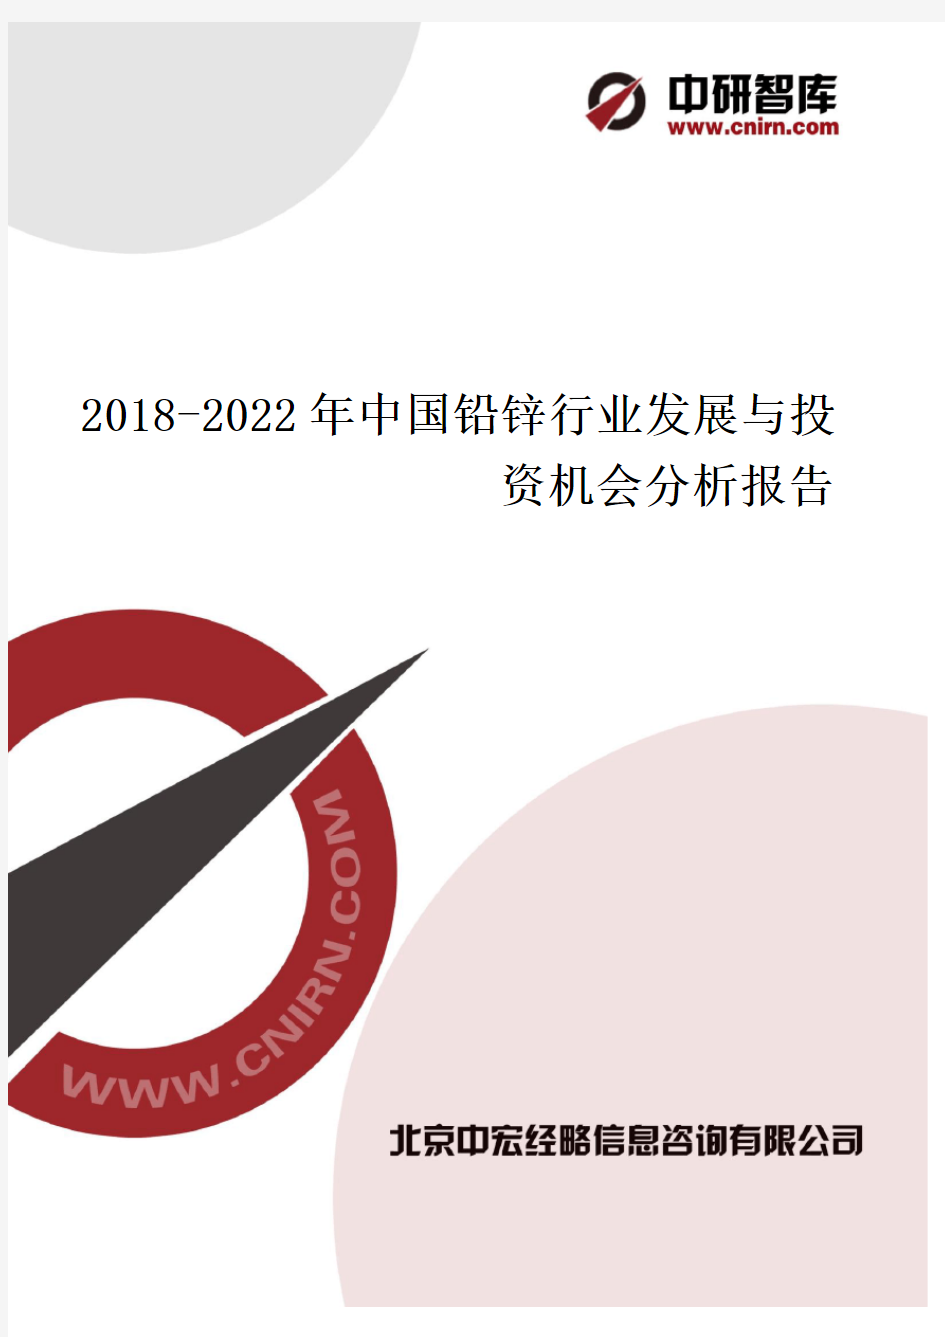 中国铅锌行业发展与投资机会分析报告